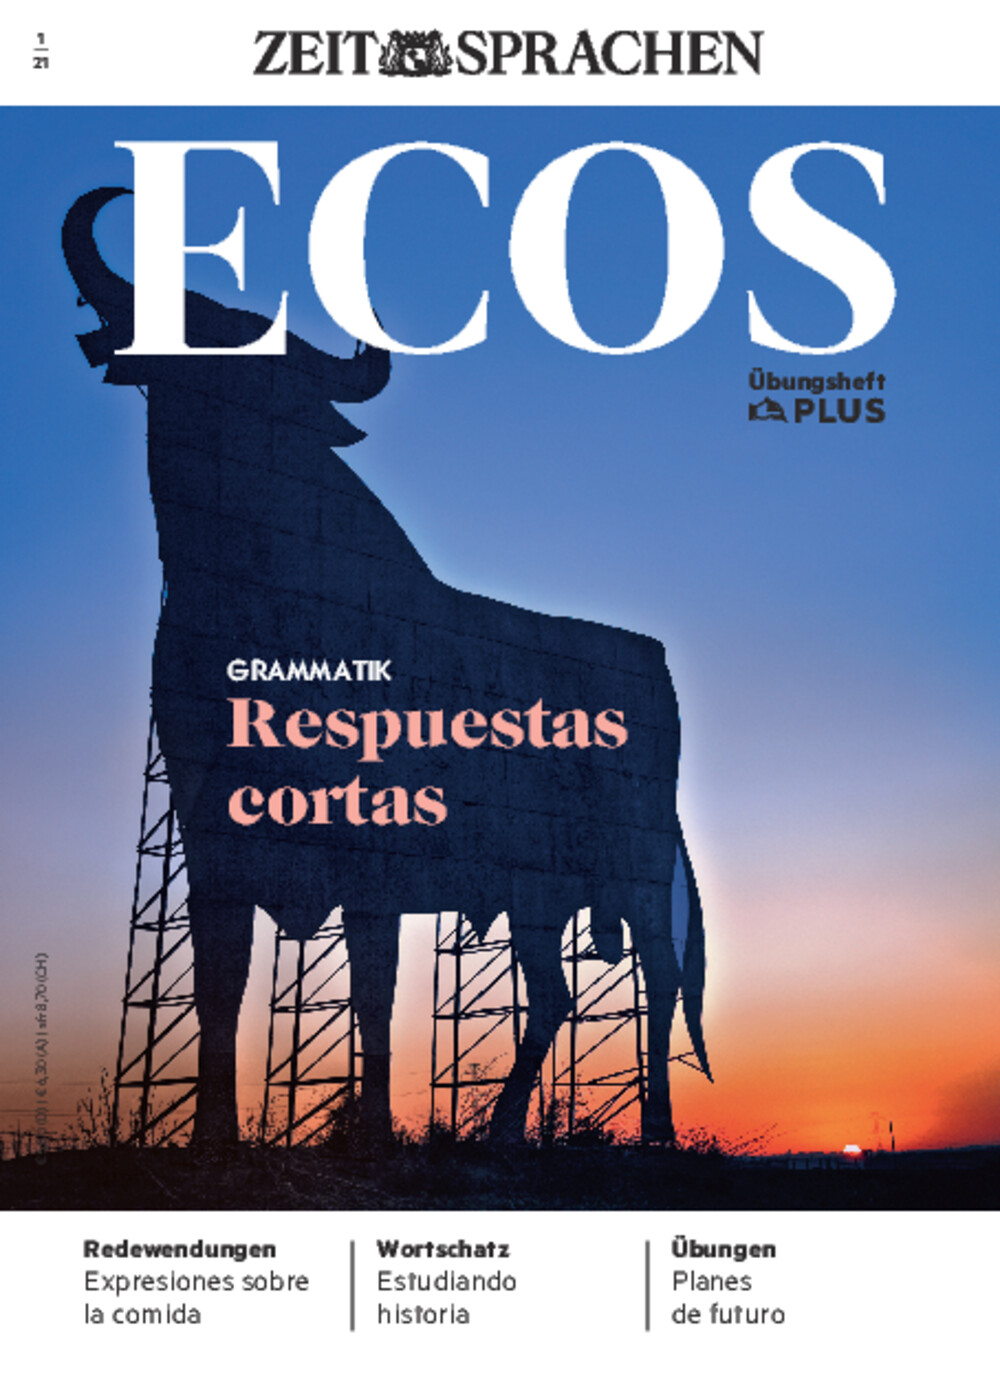 Ecos PLUS ePaper 01/2021